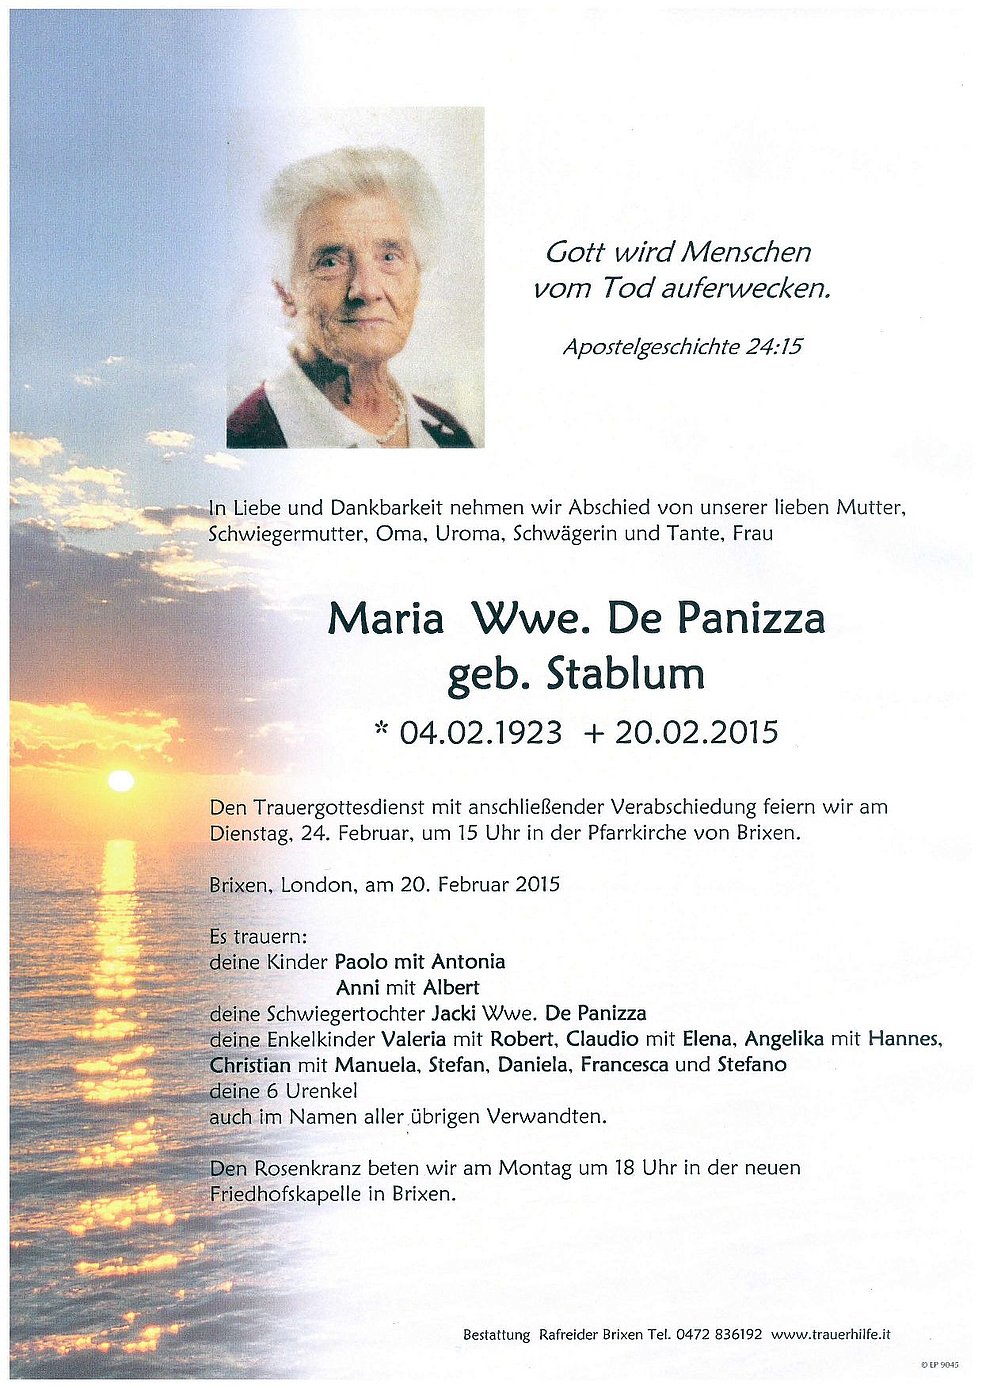 Maria Wwe De Panizza Aus Brixen Trauerhilfeit Das Südtiroler Gedenkportal 